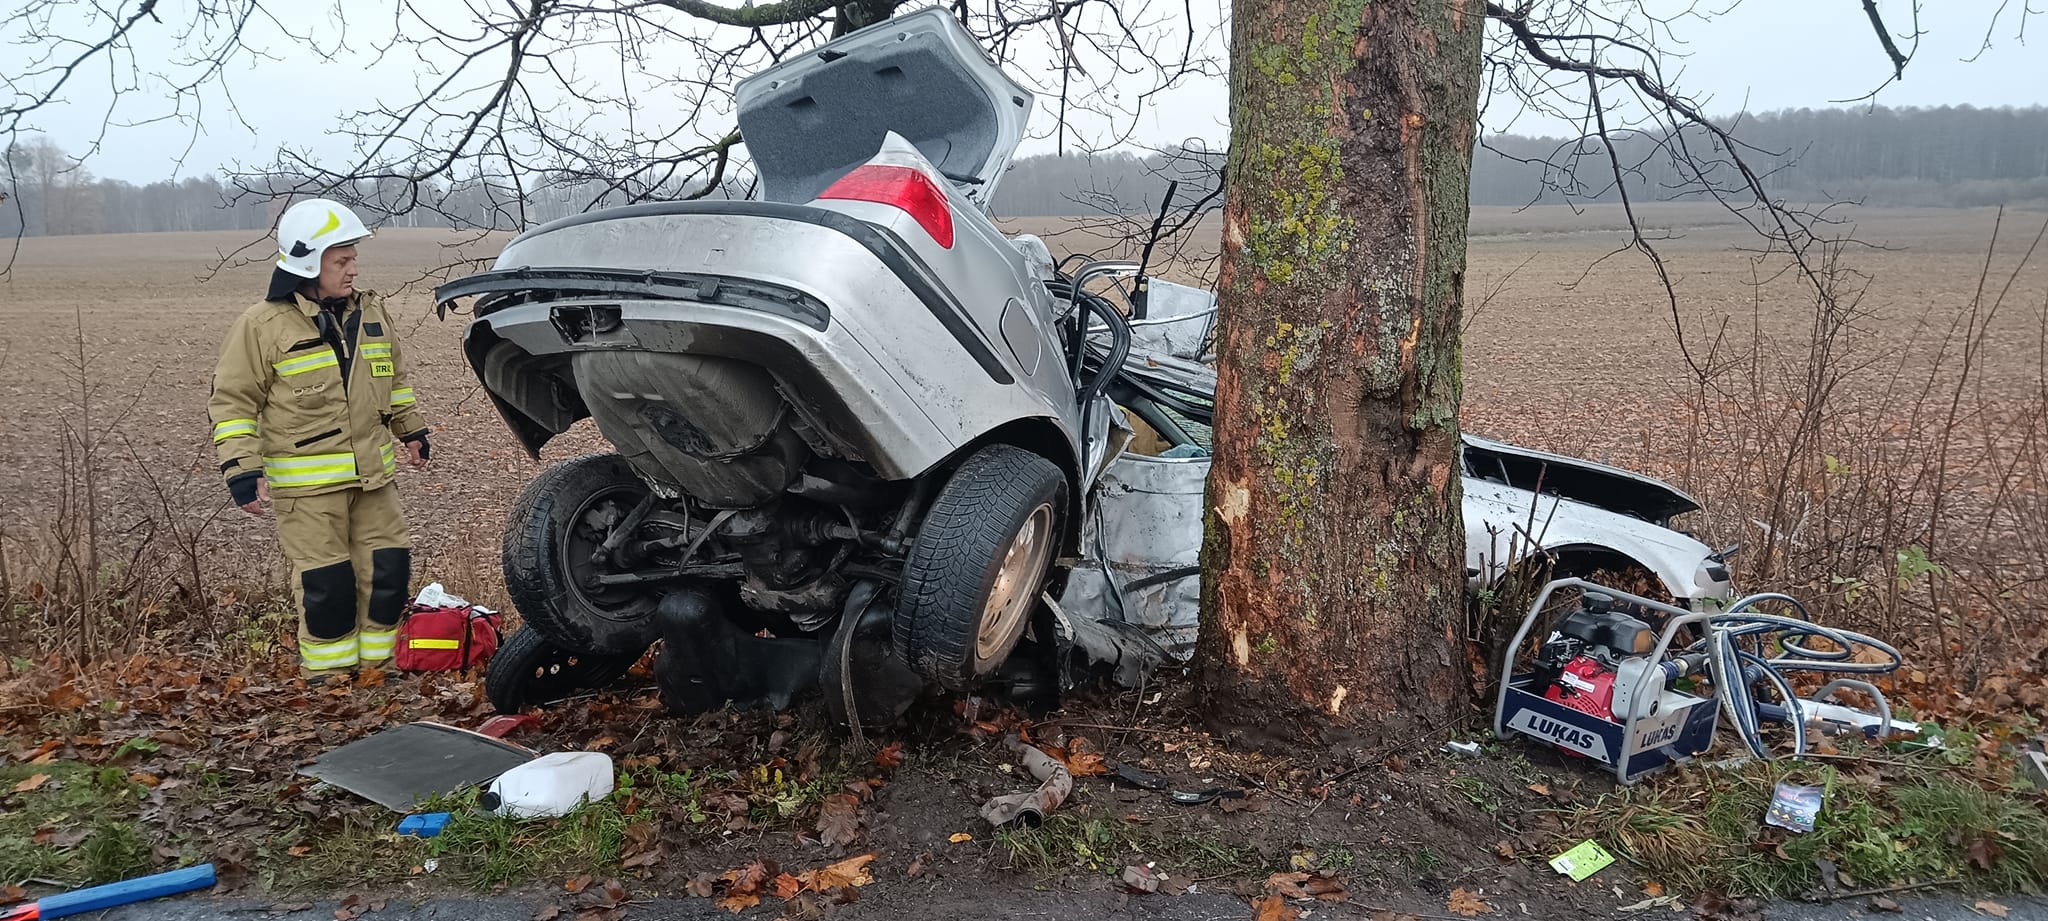 Tragiczny wypadek BMW. Samochód uderzył w drzewo, kobieta w szpitalu ruch drogowy Olsztyn, Wiadomości, zShowcase